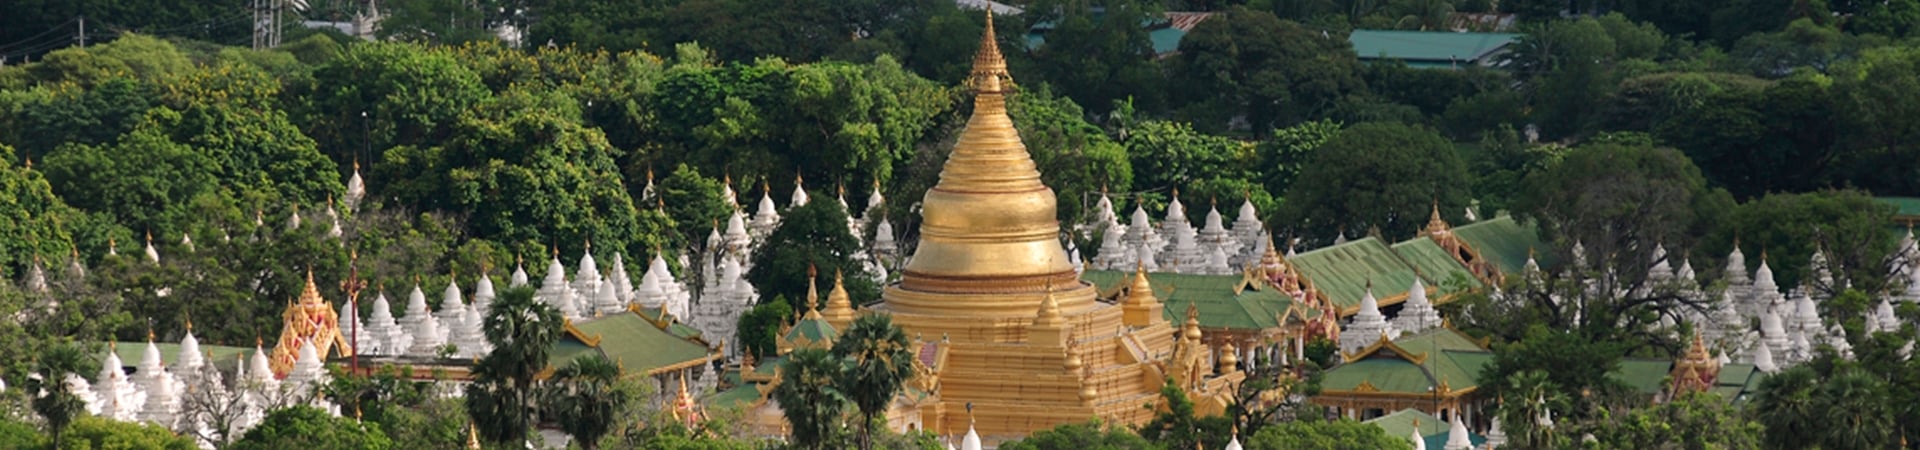 Image of Mandalay Hill and Environs